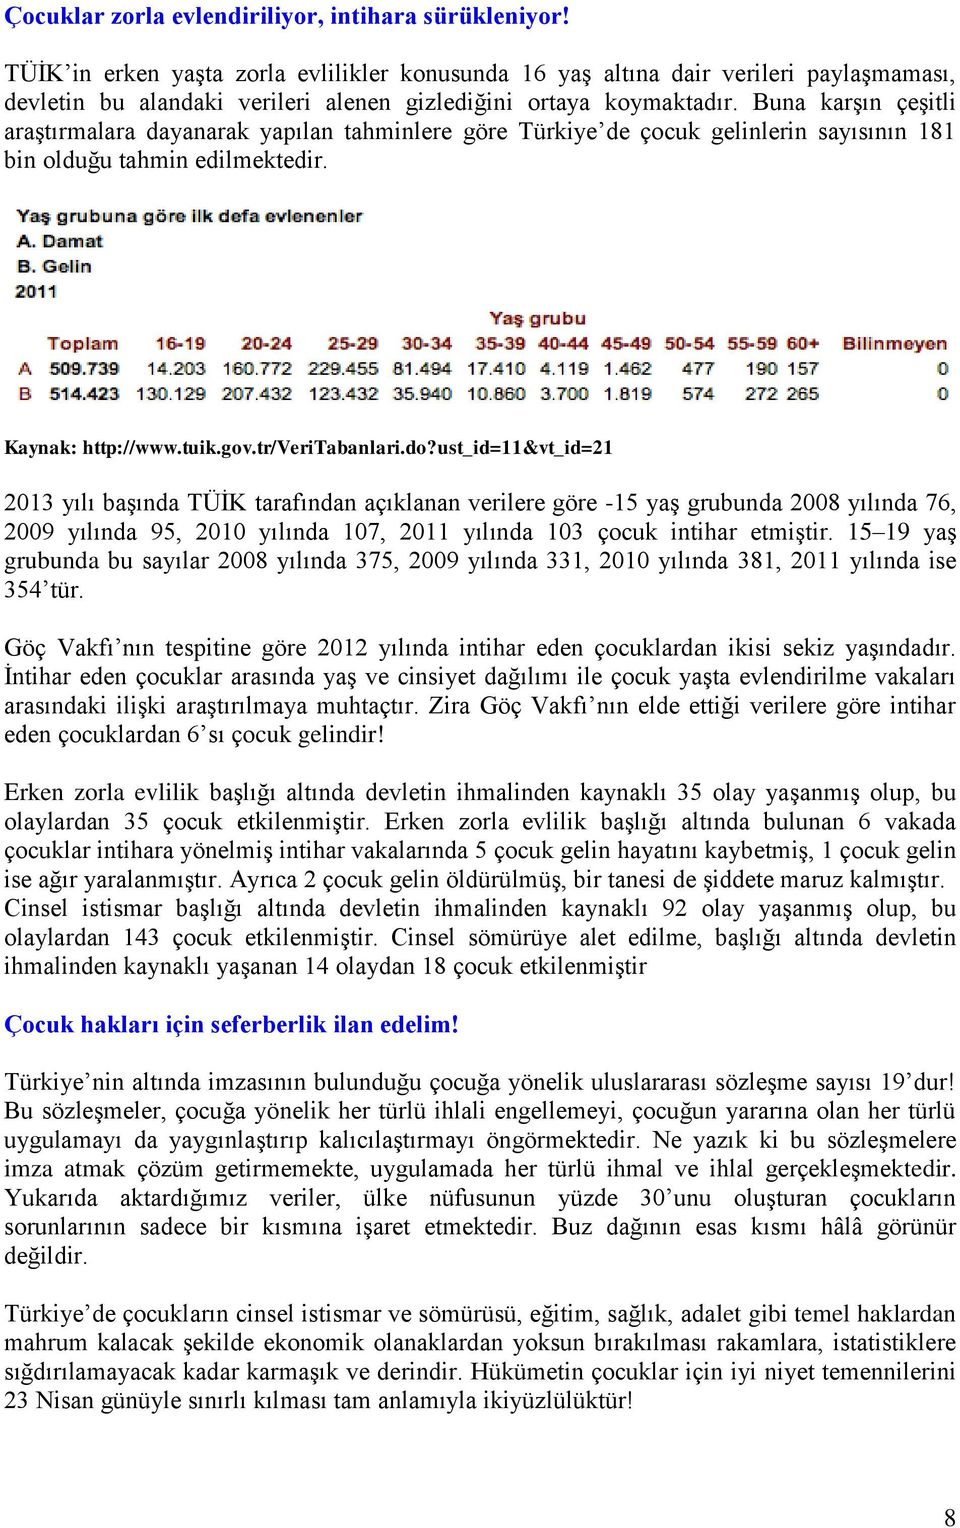 Buna karşın çeşitli araştırmalara dayanarak yapılan tahminlere göre Türkiye de çocuk gelinlerin sayısının 181 bin olduğu tahmin edilmektedir. Kaynak: http://www.tuik.gov.tr/veritabanlari.do?